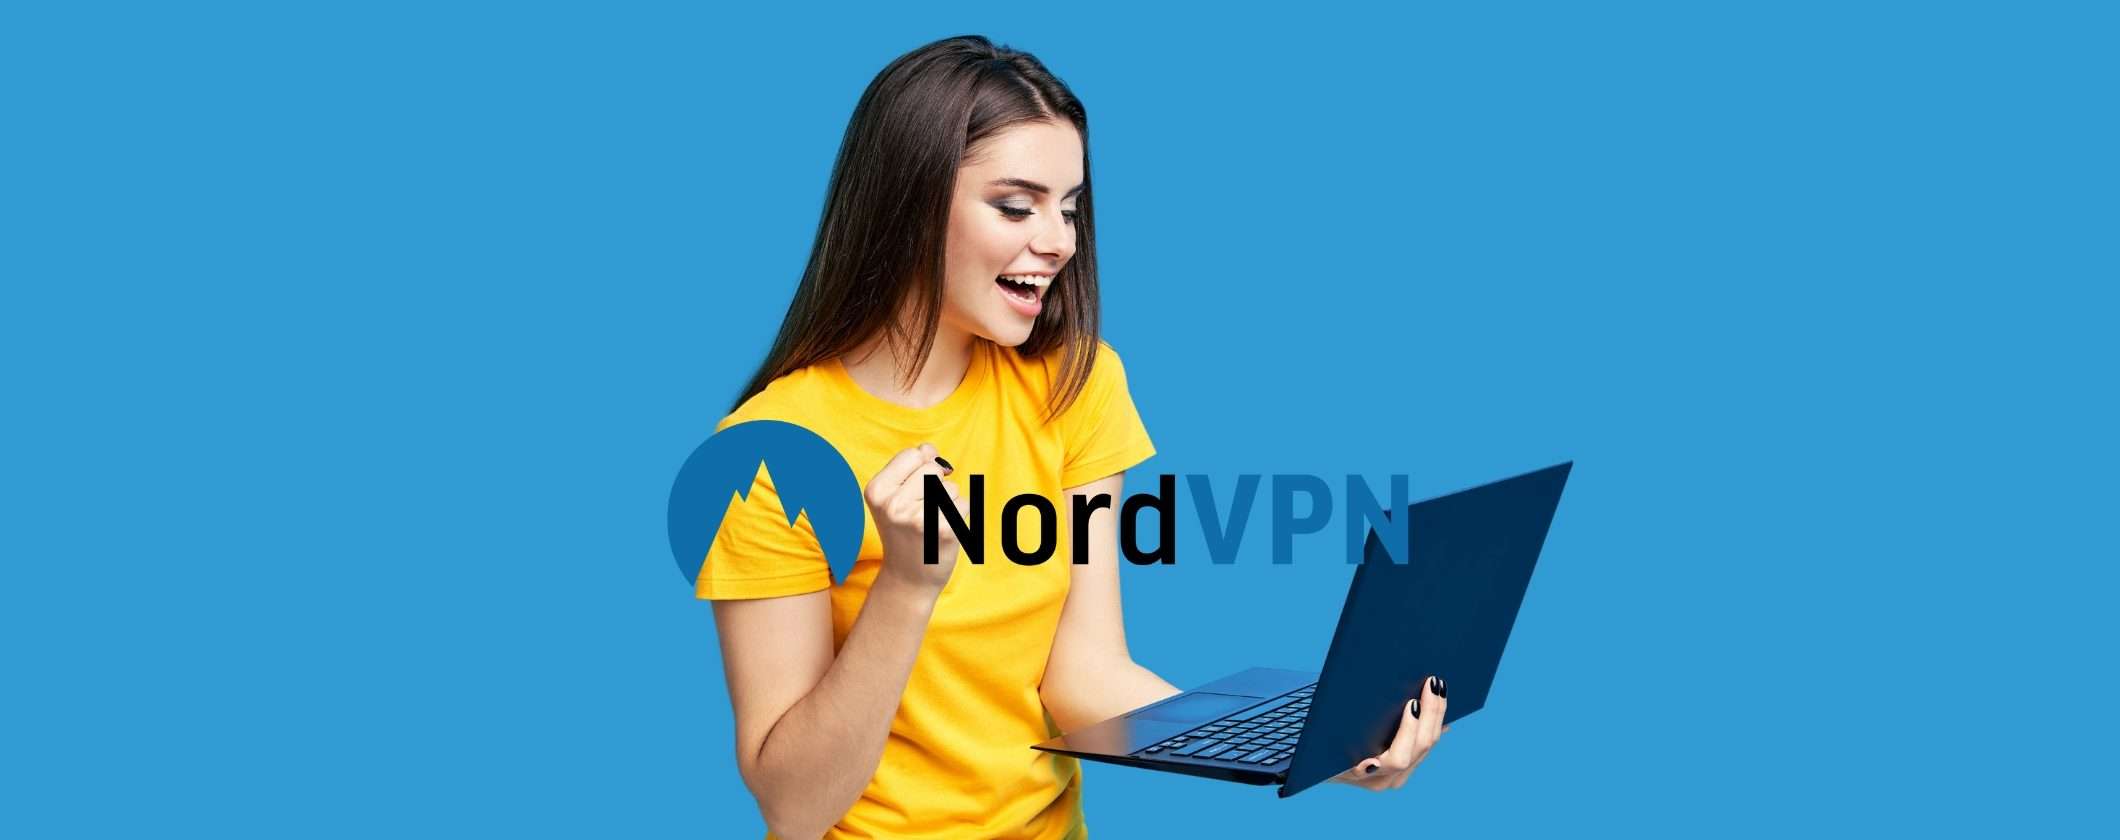 NordVPN trasforma la tua connessione: vai oltre i 6730 Mbps